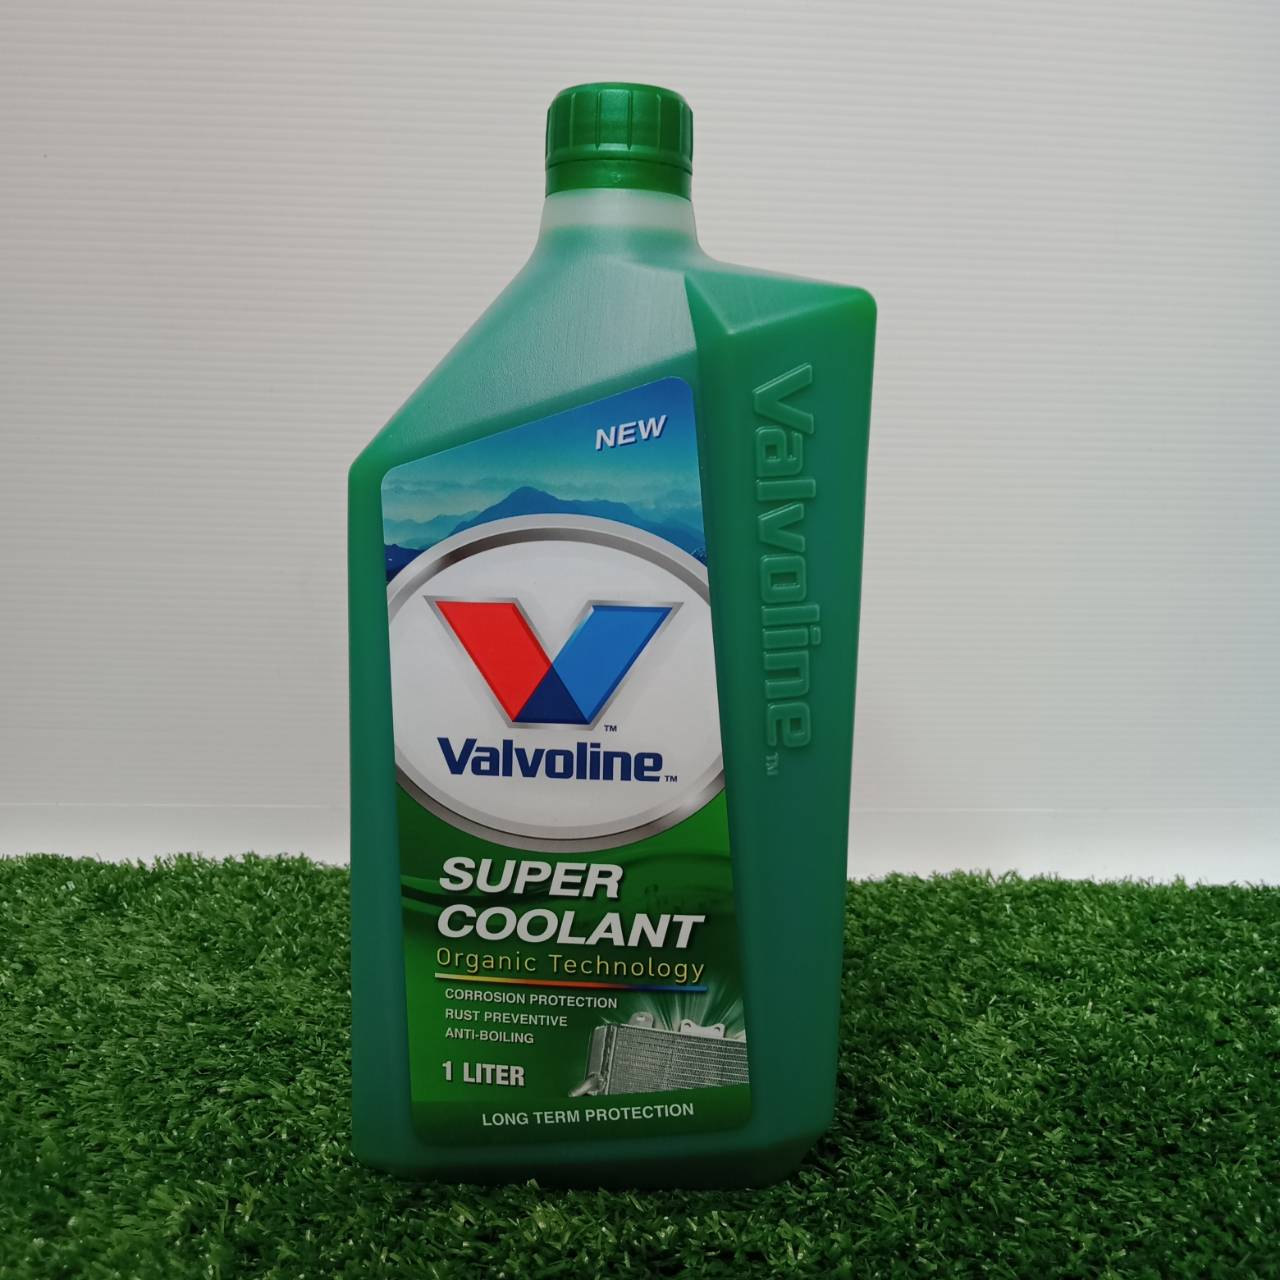 น้ำยาหม้อน้ำ วาโวลีน  Valvoline ซุปเปอร์ คูลแลนท์ สีเขียว (1ลิตร)